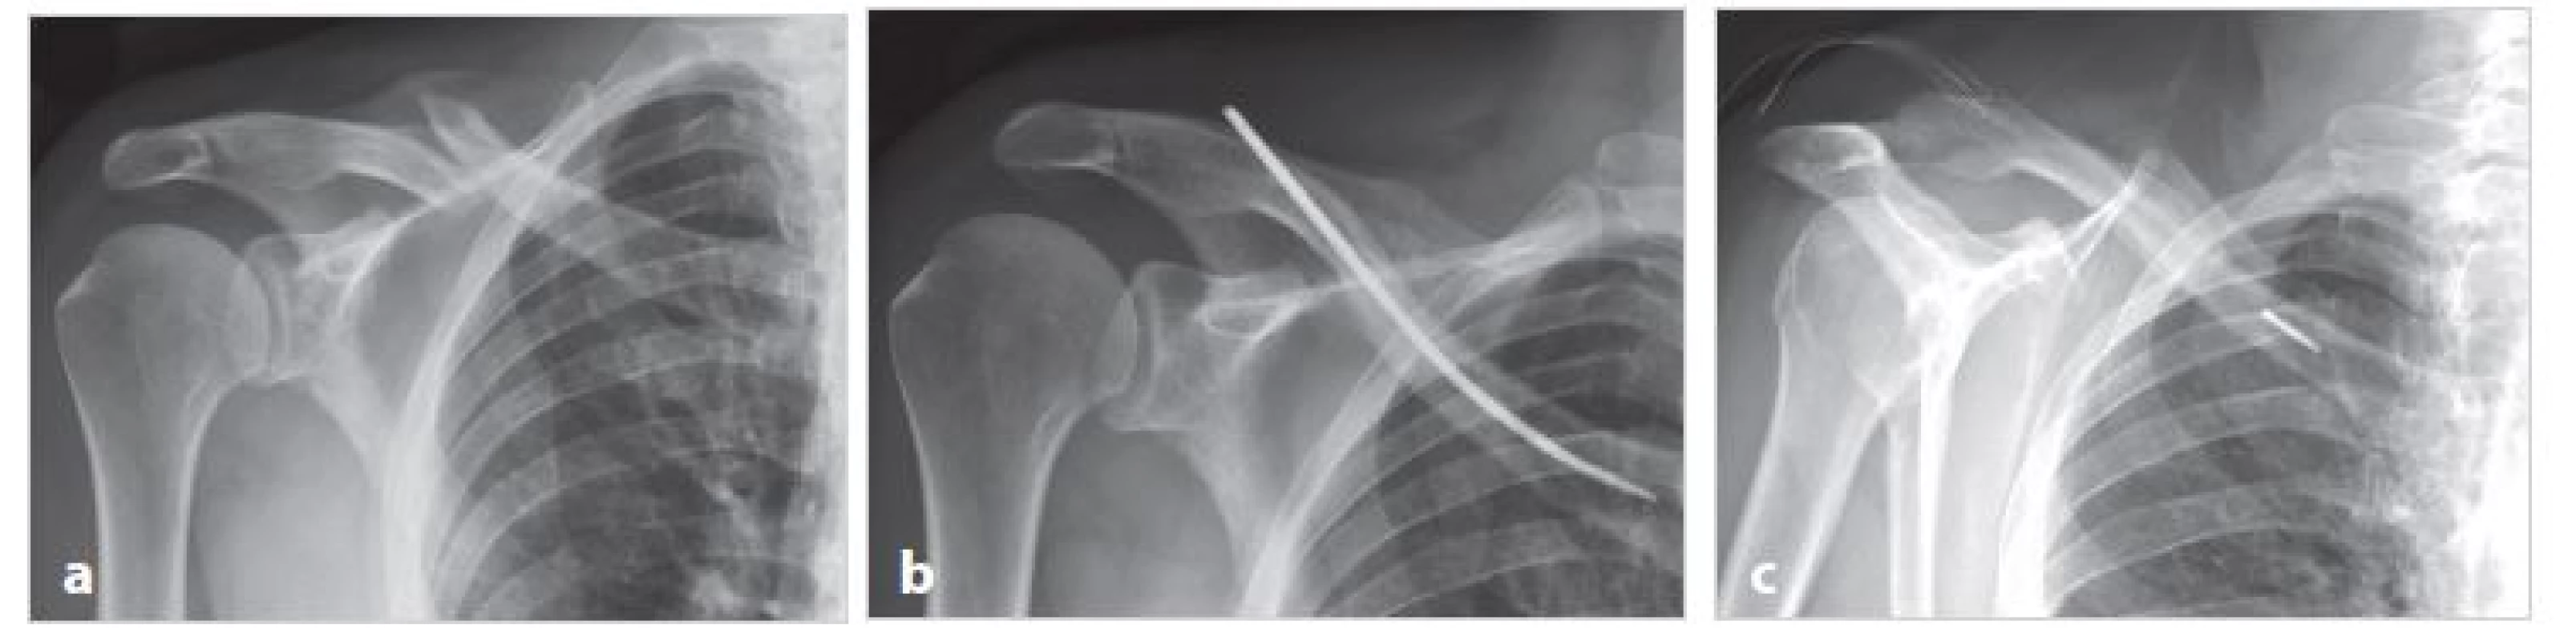 Dobré hojení zlomeniny a zlomení implantátu při jeho extrakci (muž T. E., 59 let)
a) úrazové snímky dvoufragmentové zlomeniny; b) pět měsíců po operaci zlomenina zhojena v anatomickém postavení; c) šest měsíců po operaci došlo při extrakci implantátu k odlomení jeho mediální části, která ponechána in situ
Fig. 3: Good healing of fracture and breakage of implant during its extraction (male T.E., 59 years)
a) X-ray of a two-fragment fracture taken after the injury; b) five months after surgery, the fracture is healed in anatomical position;
c) six months after the surgery, the implant was broken during its extraction, the medial part of pin was left in the bone